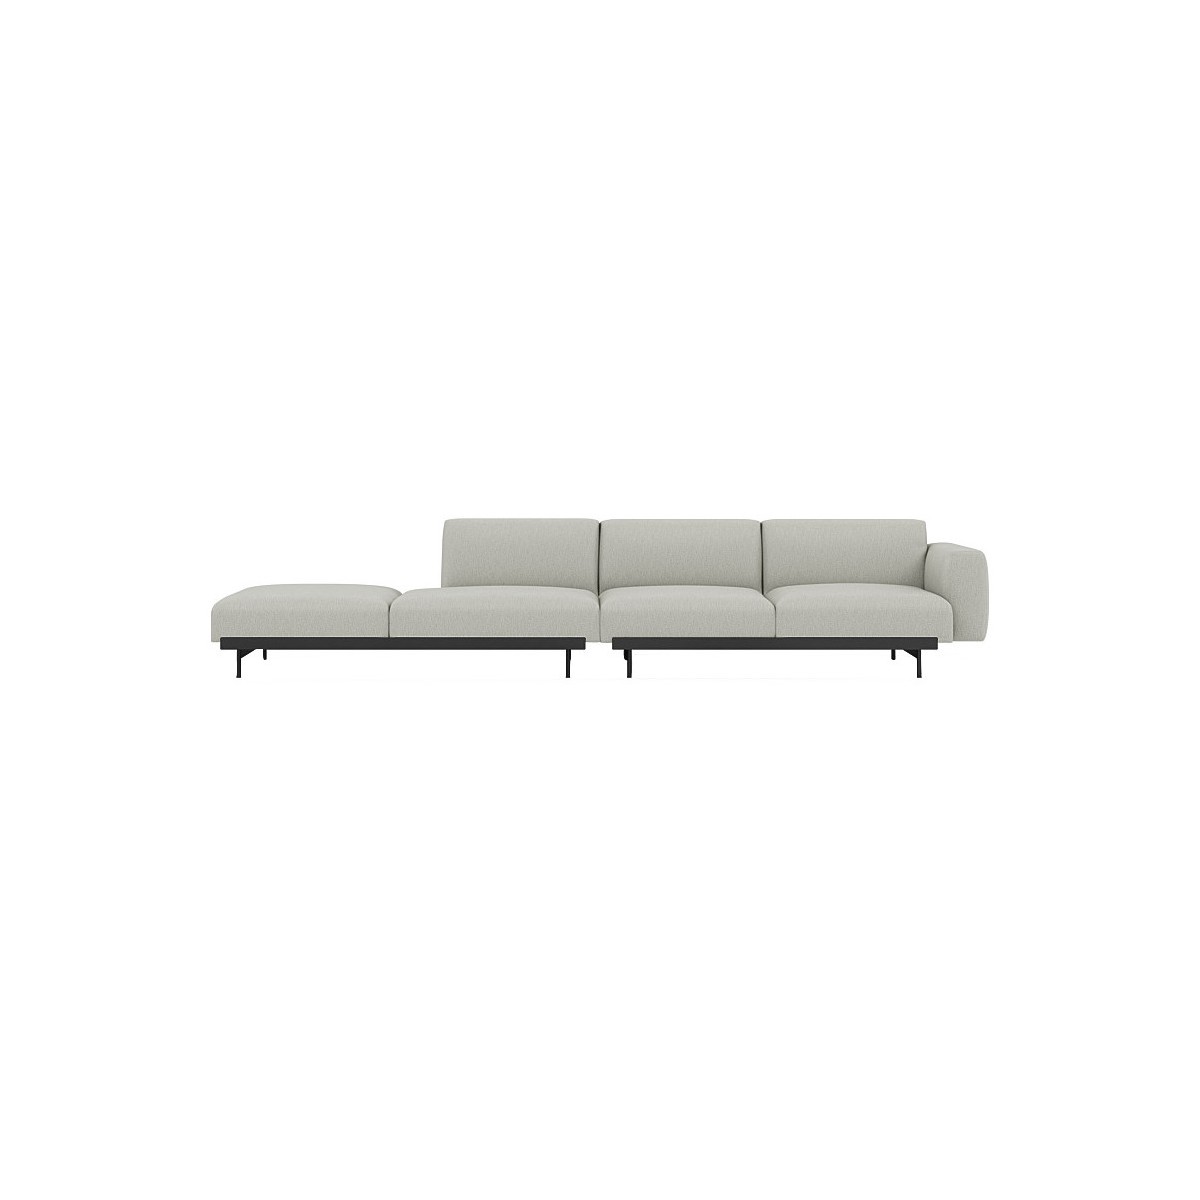 Clay 12 / black – In Situ 4-seater sofa / configuration 2 – 360 x 107 cm